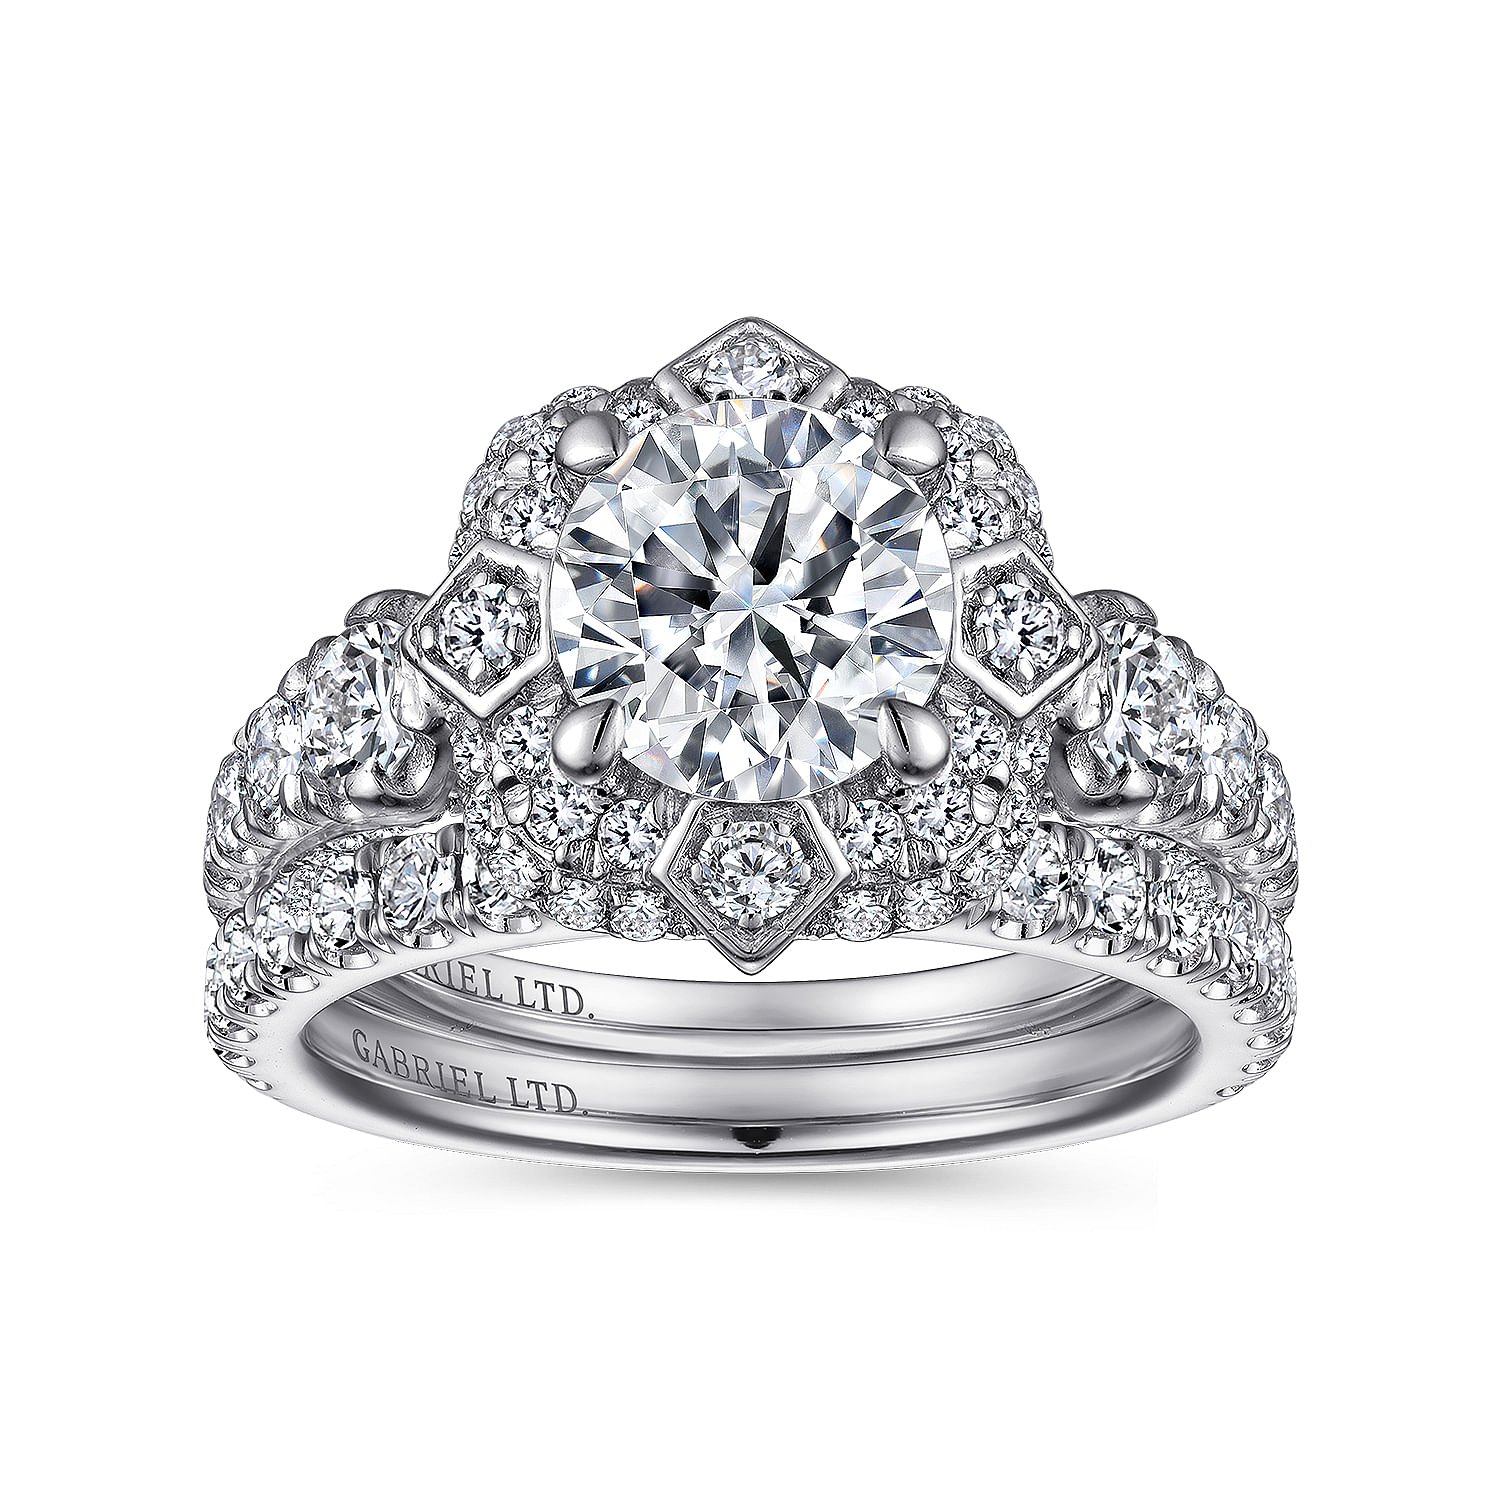 Unique 18K White Gold Art Deco Double Halo Diamond Engagement Ring